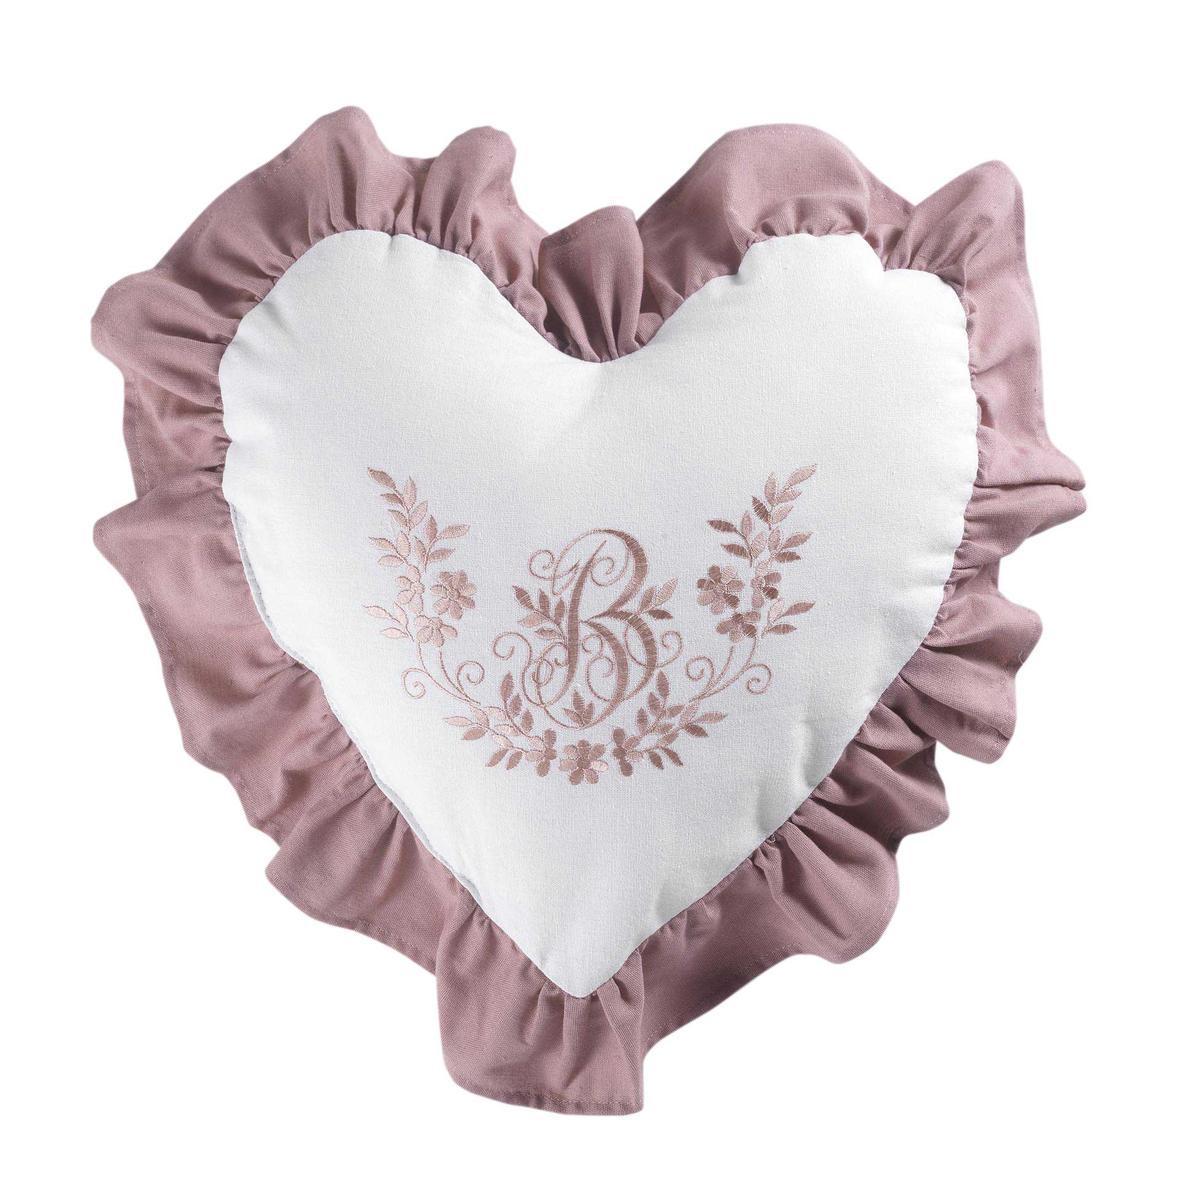 Coussin cœur bonheur - 40 x 40 cm - Rose et blanc